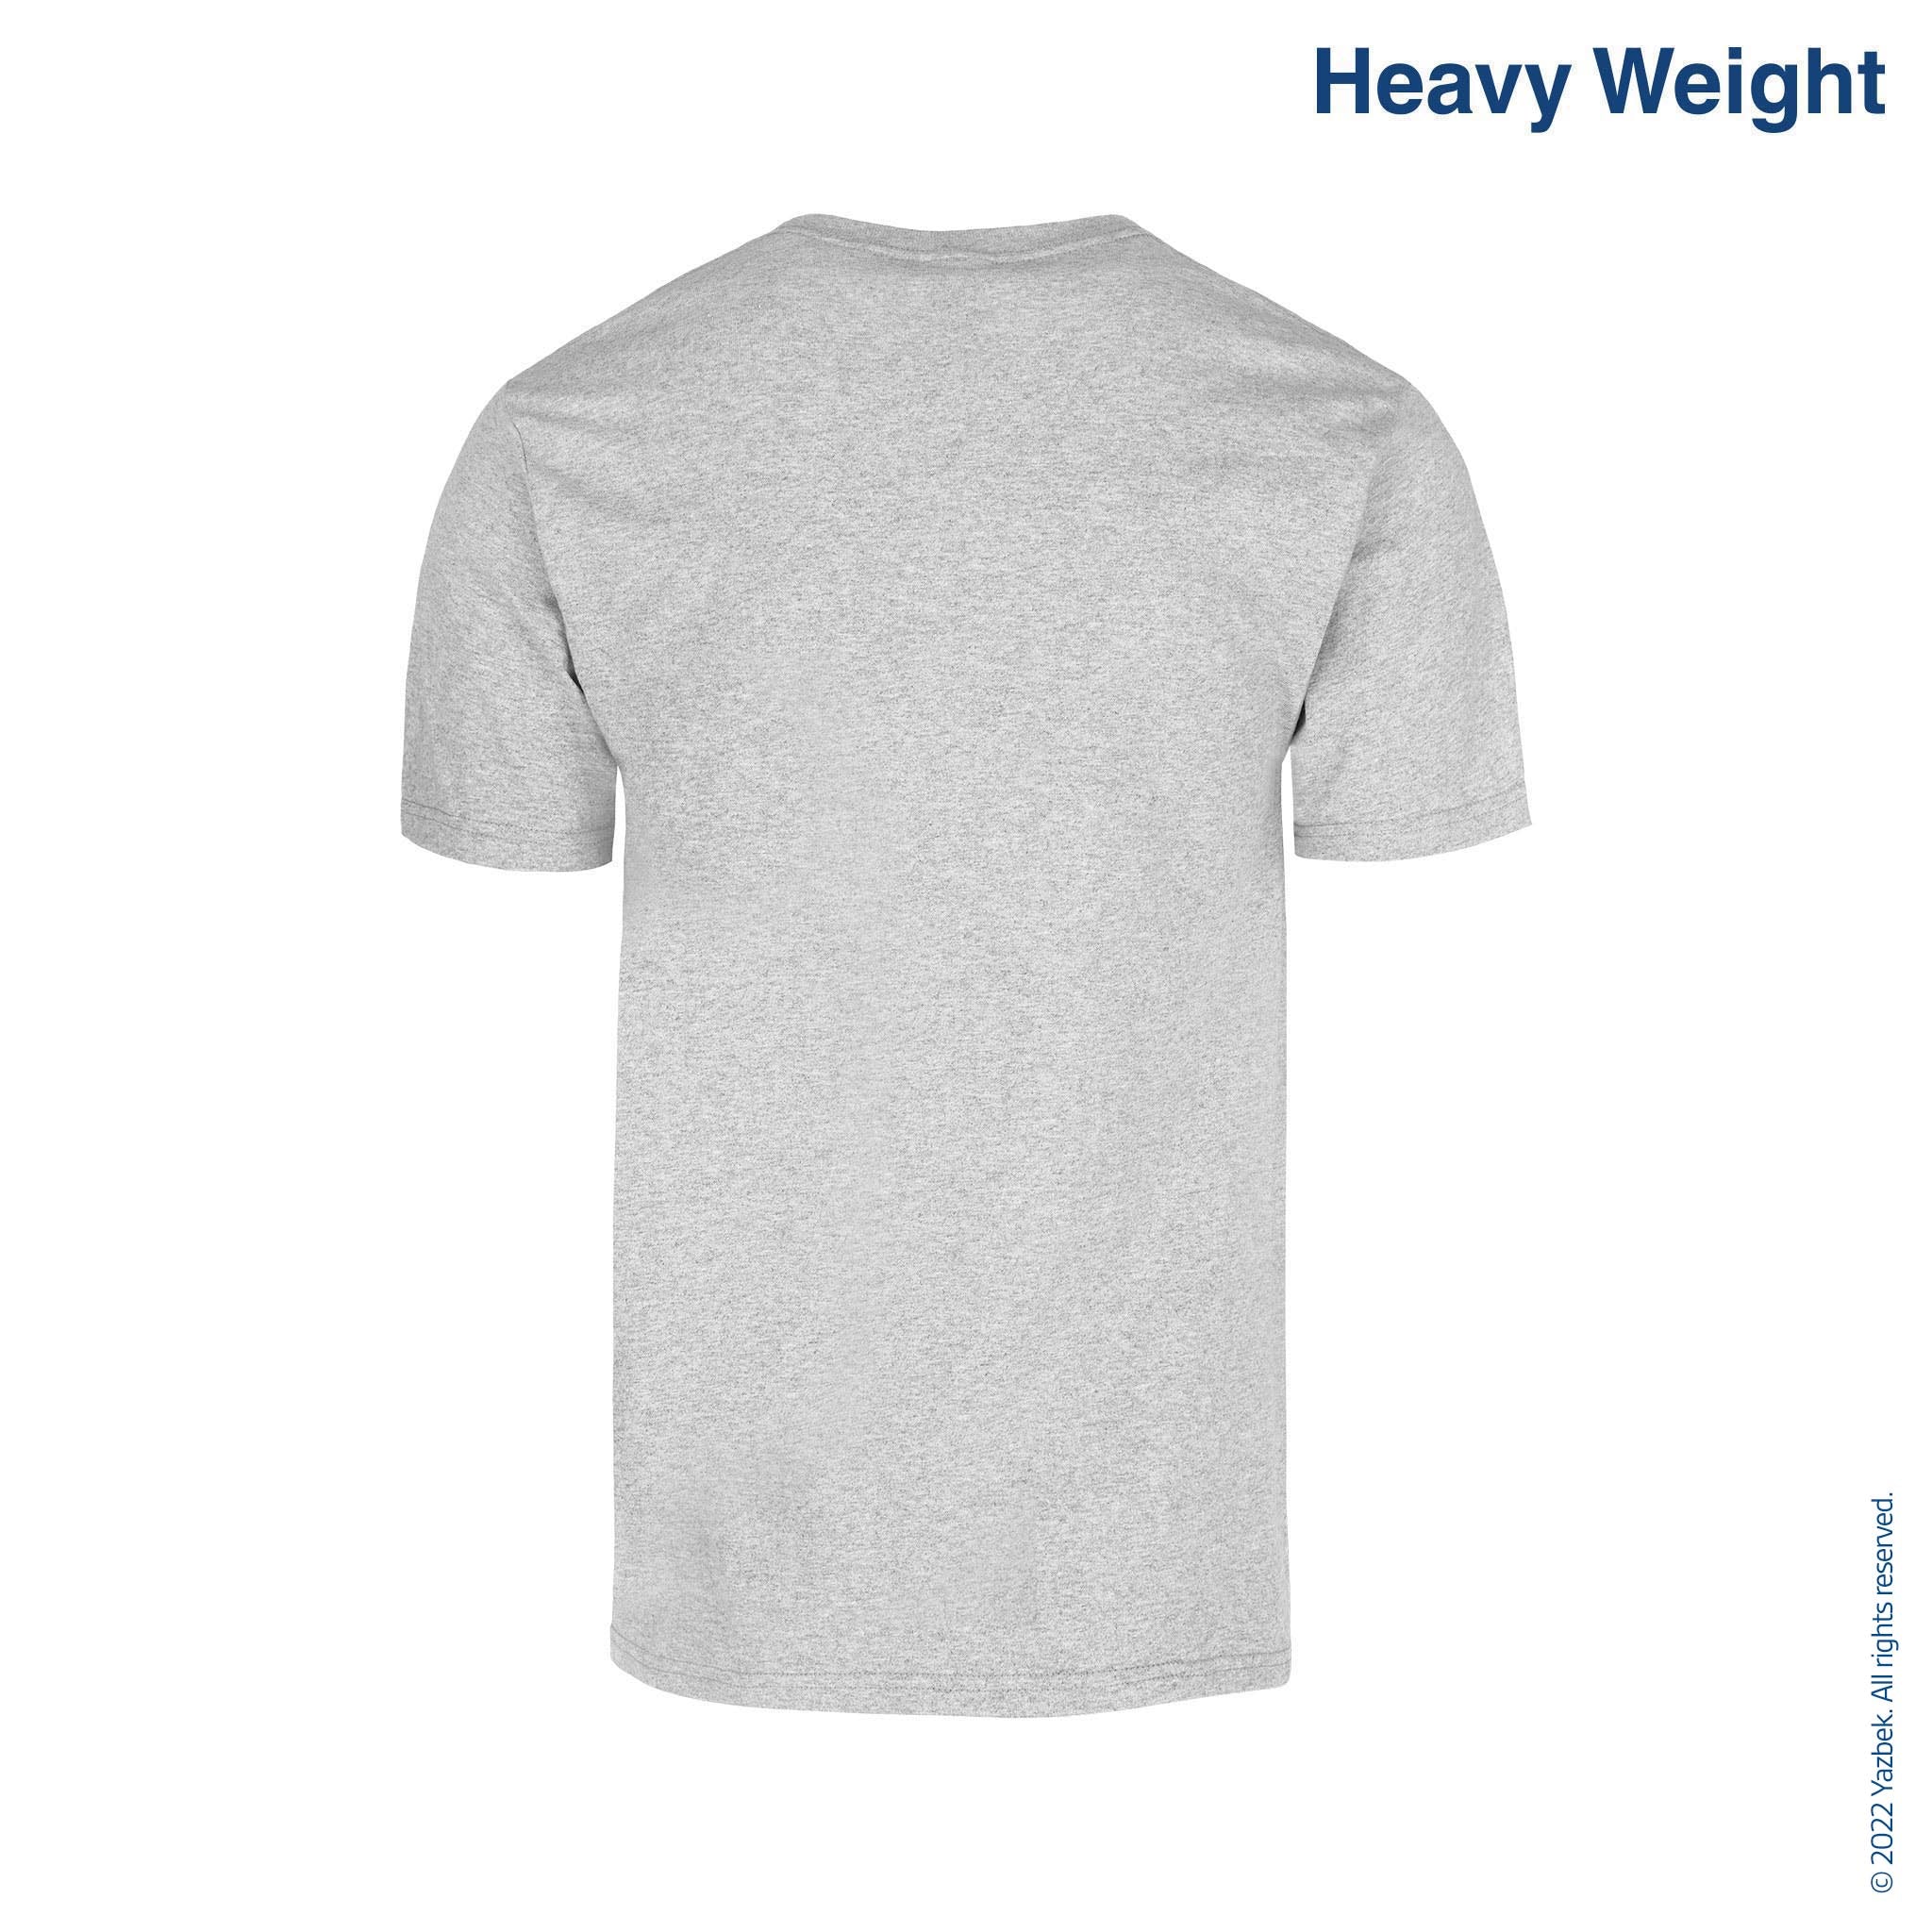 Men's Crew Neck Sleeveless T Shirt (Heather Grey) – Yazbek USA Mint